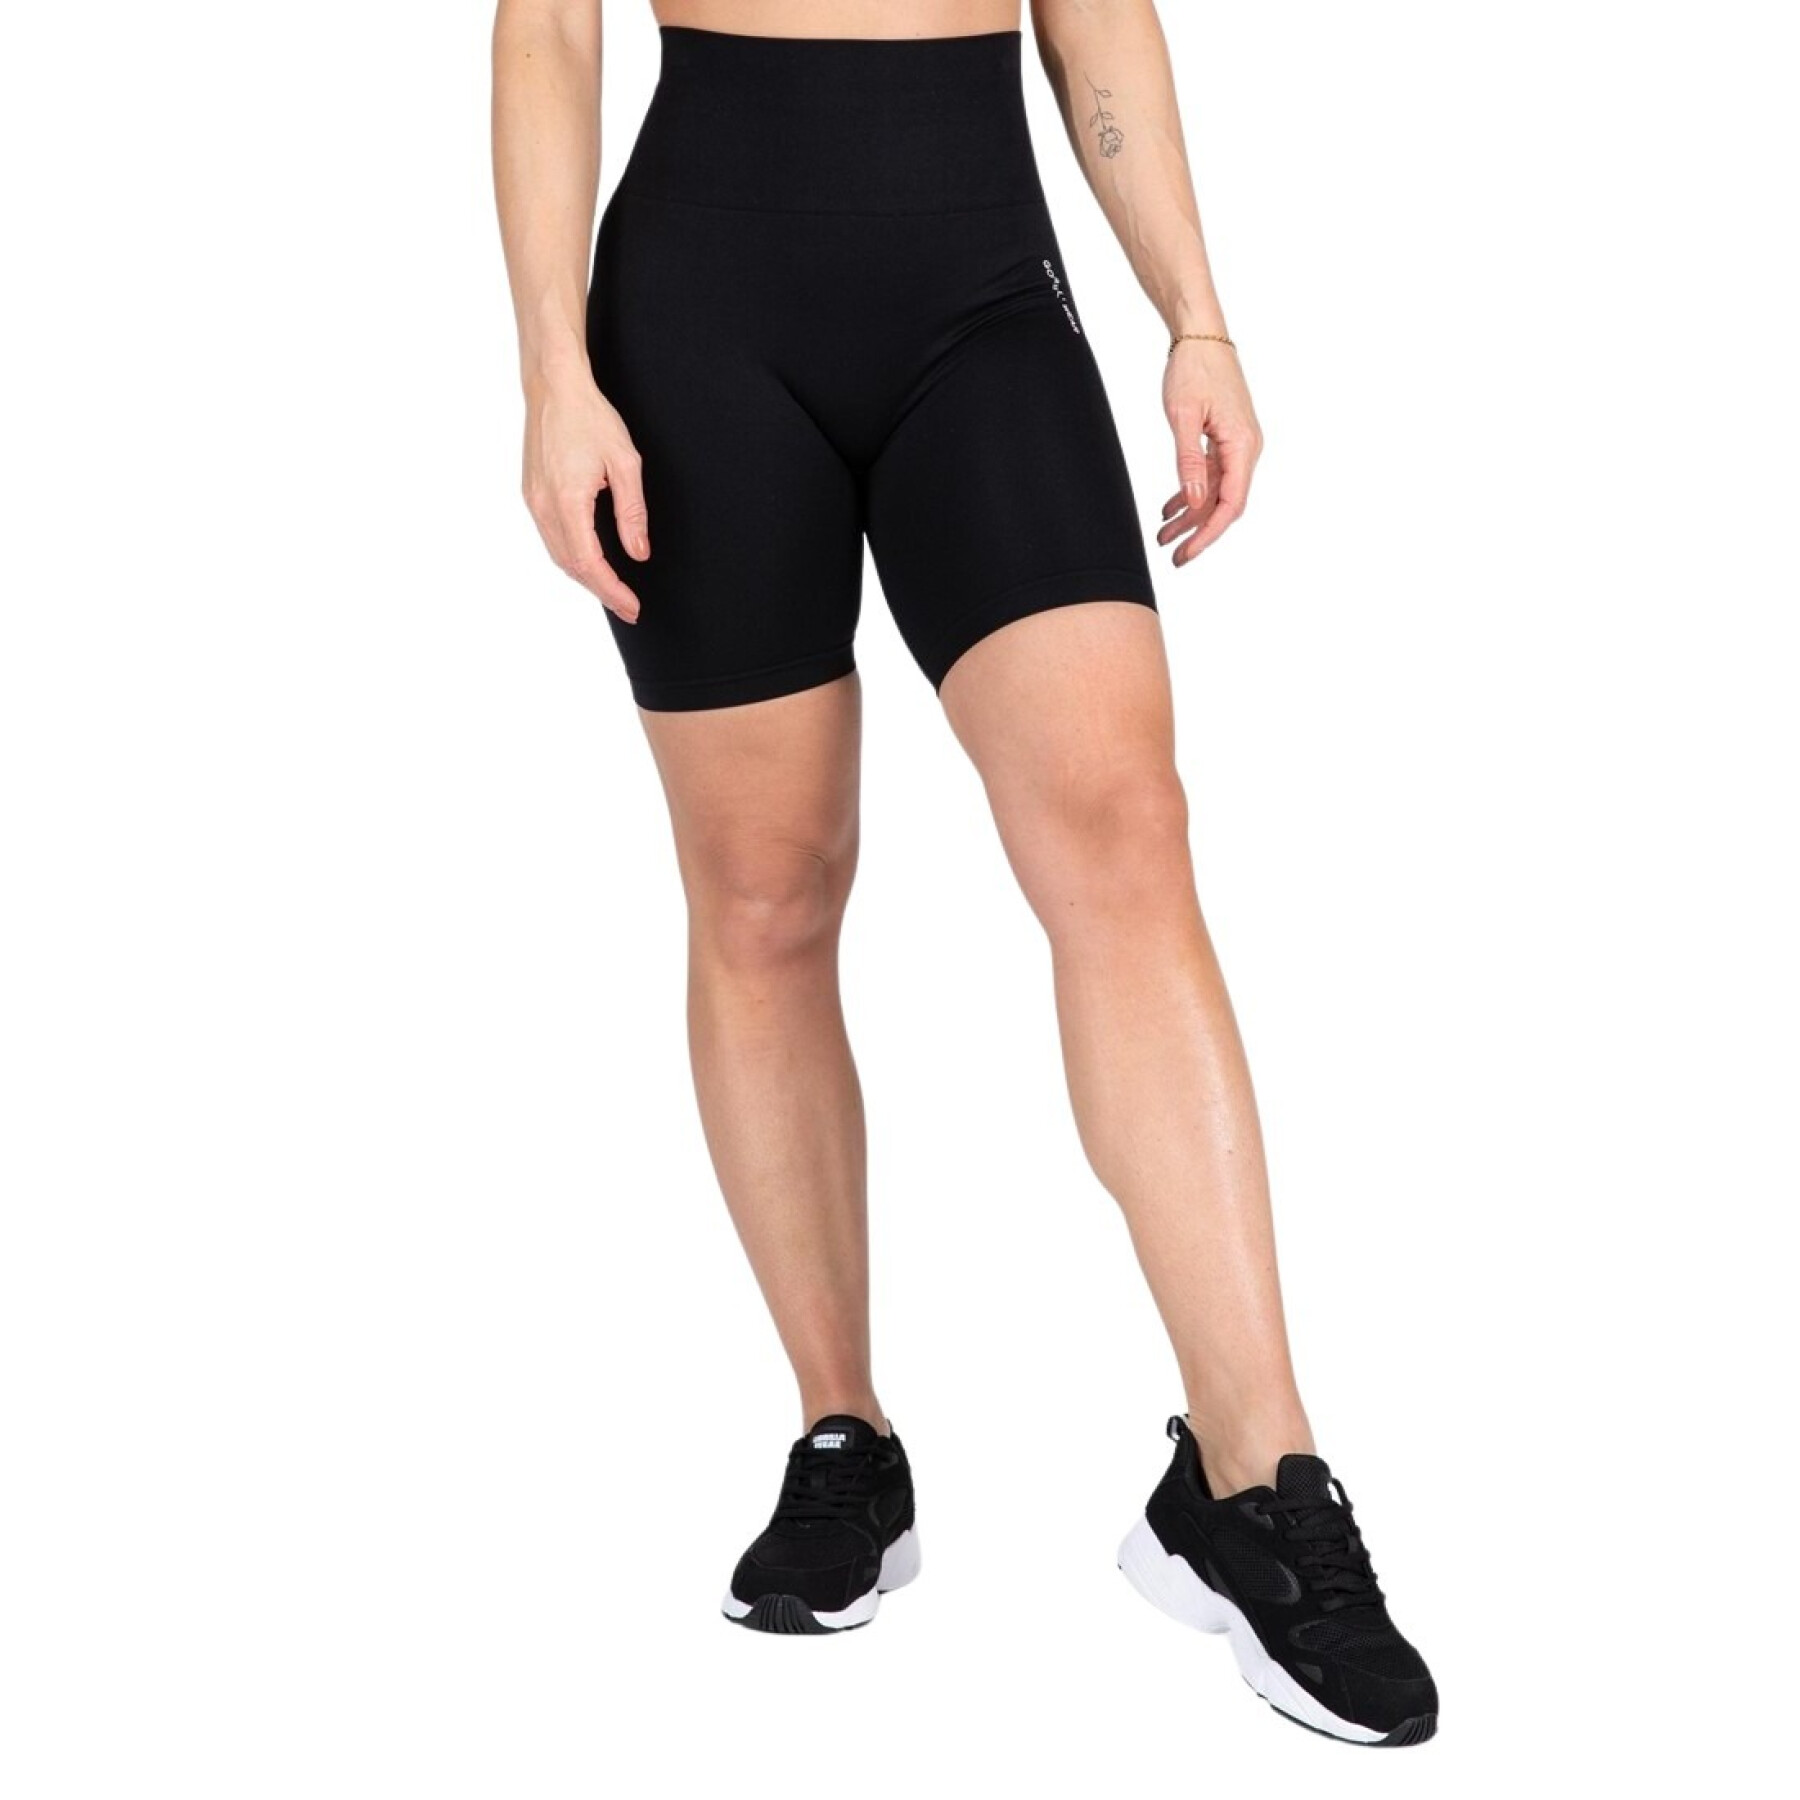 Nahtlose Radsport-Shorts für Frauen Gorilla Wear Quincy